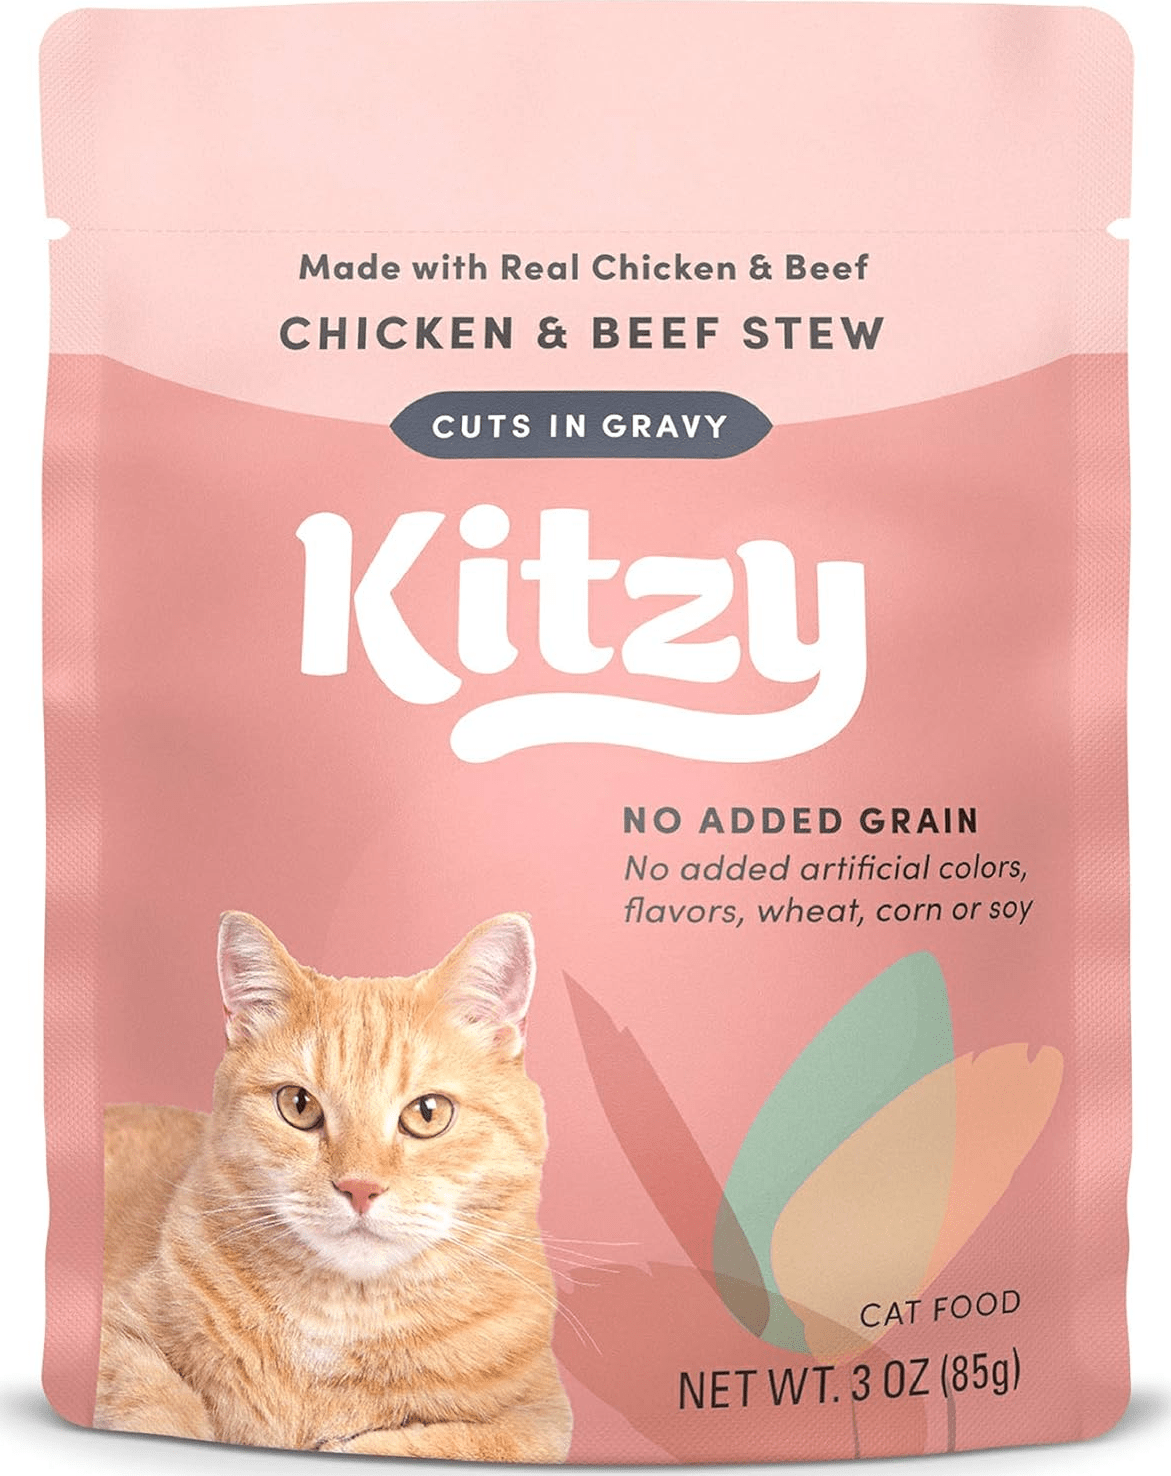 Kitzy Chicken & Beef Stew